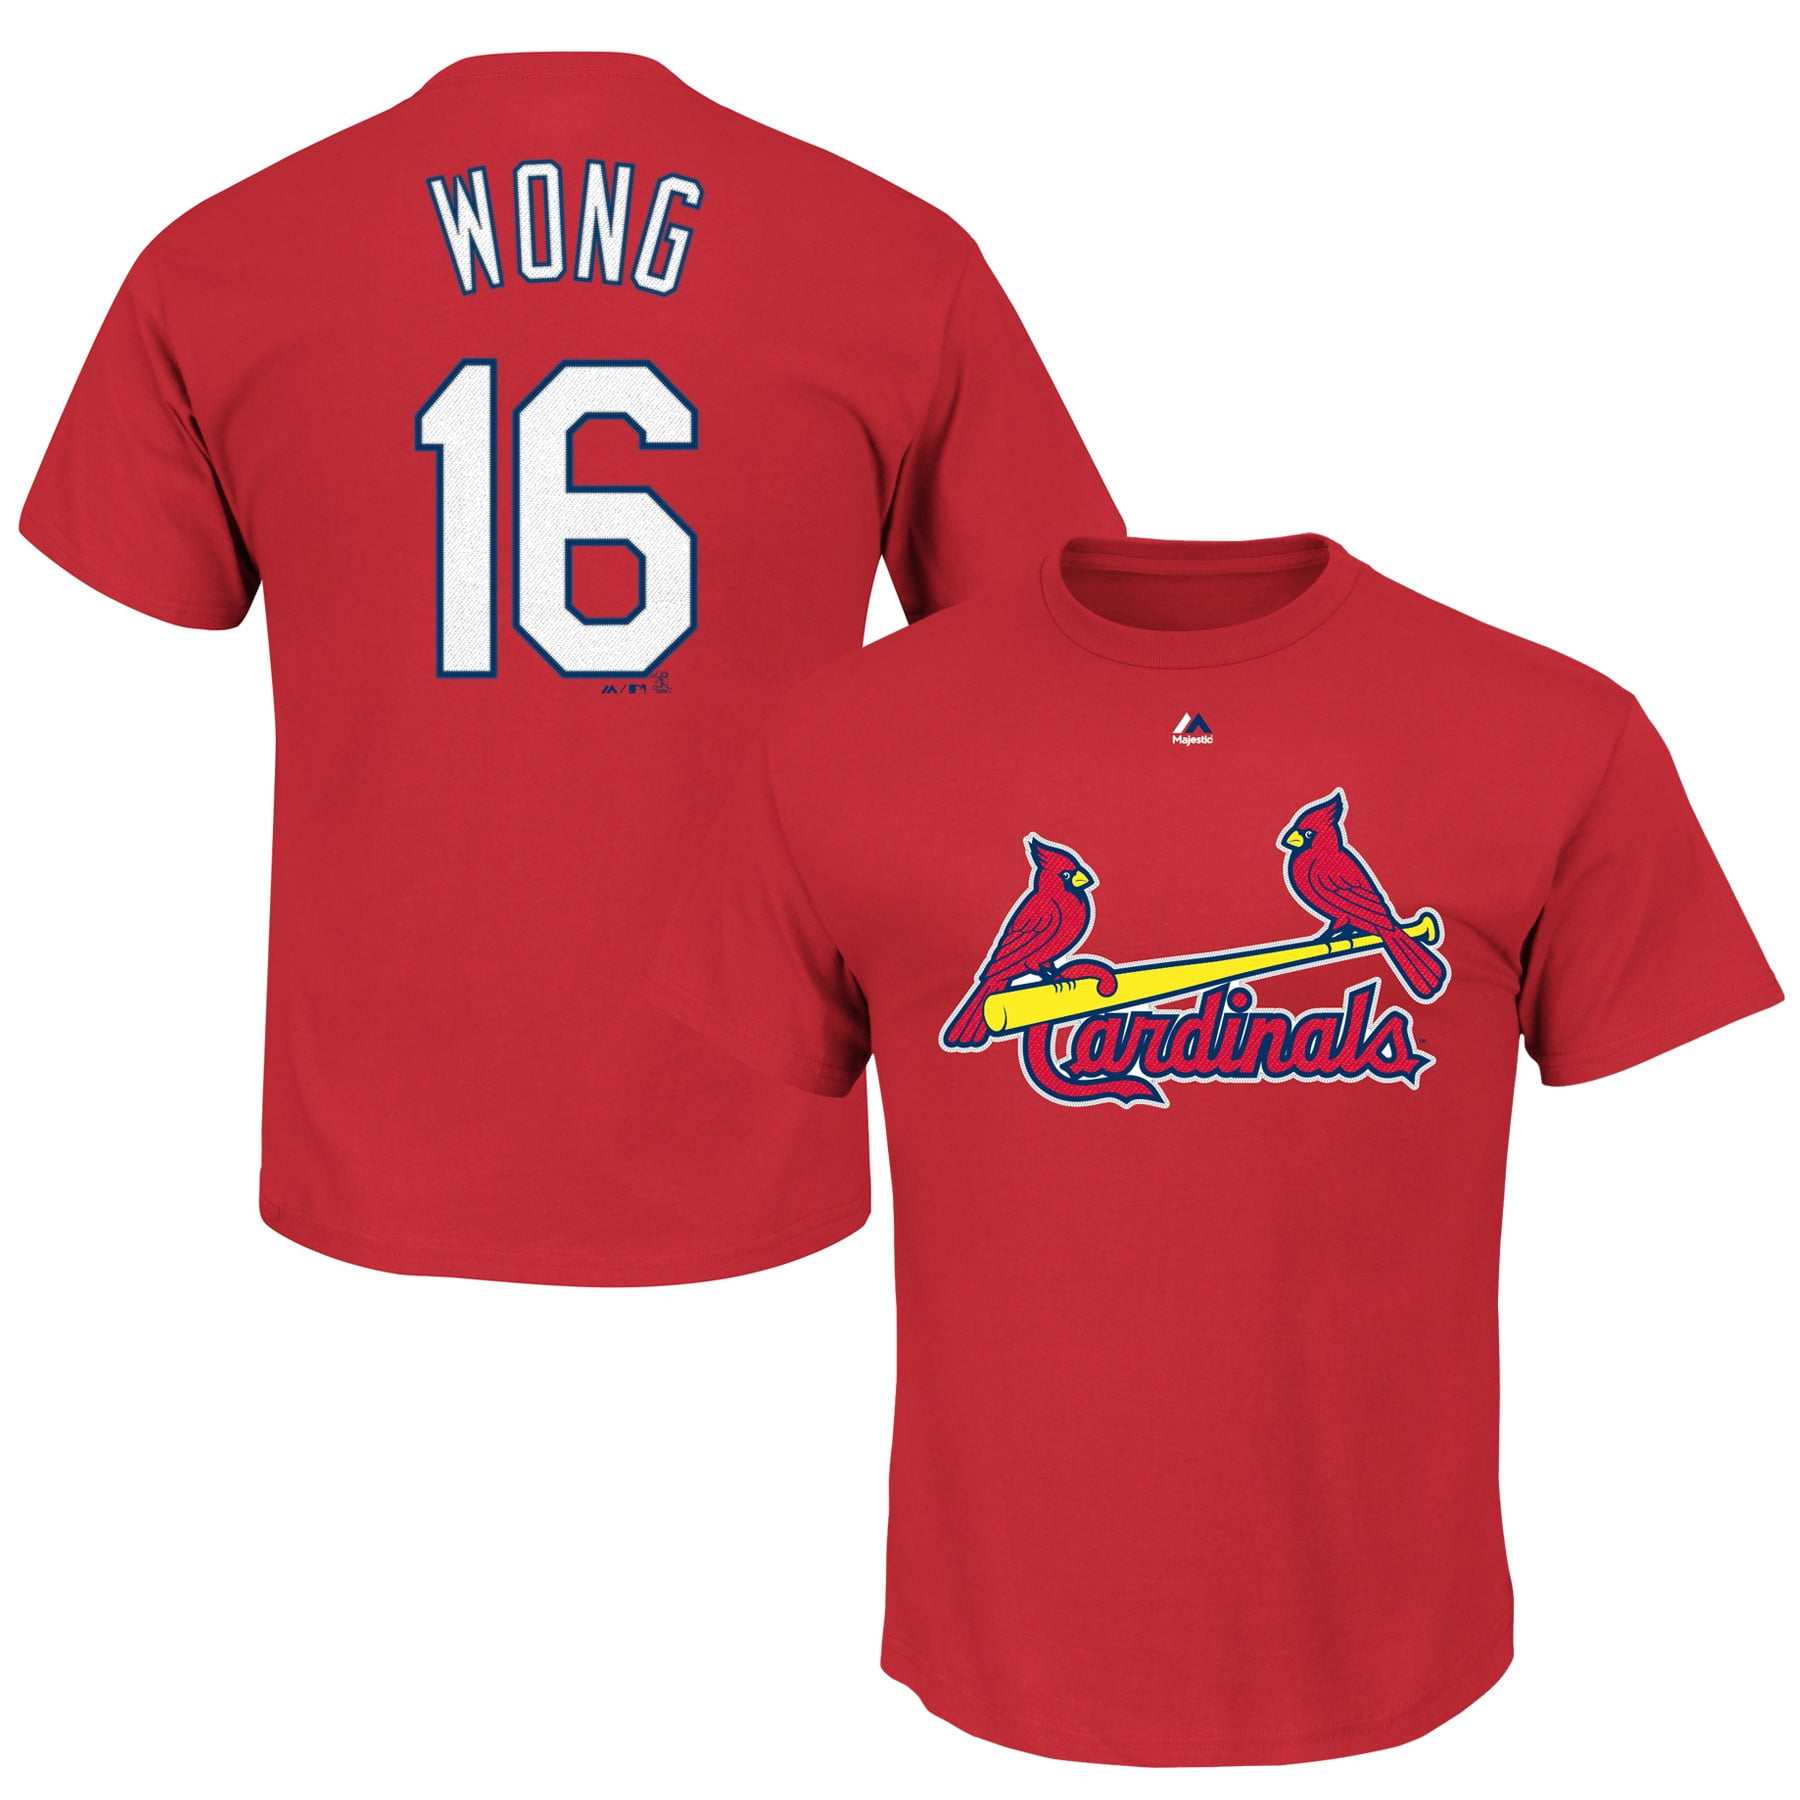 wong cardinals jersey